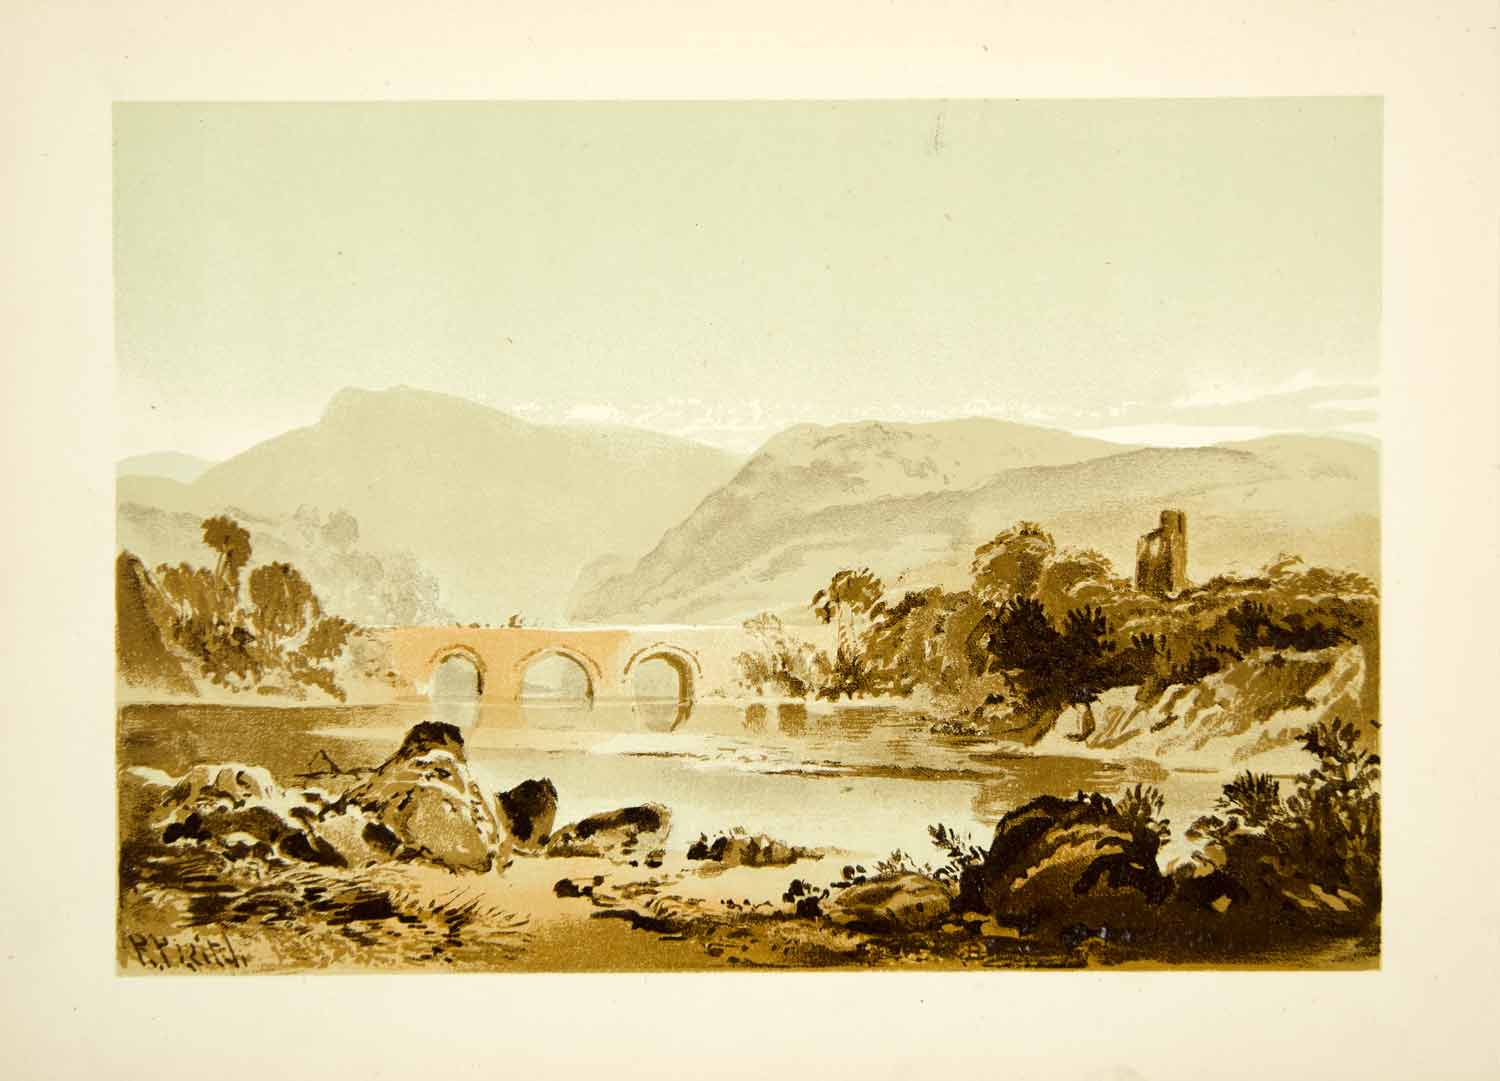 1875 Lithograph Richard Pettigrew Leitch River Bridge Landscape Mountains XALA2